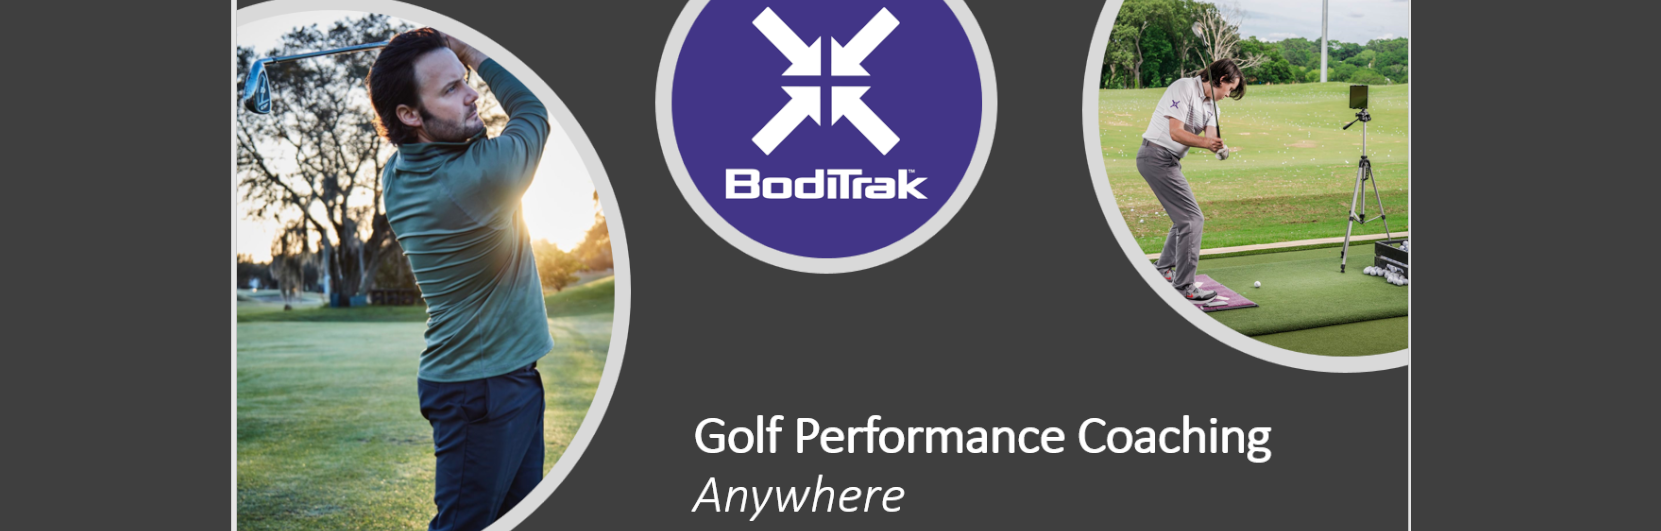 BodiTrak Golf Banner